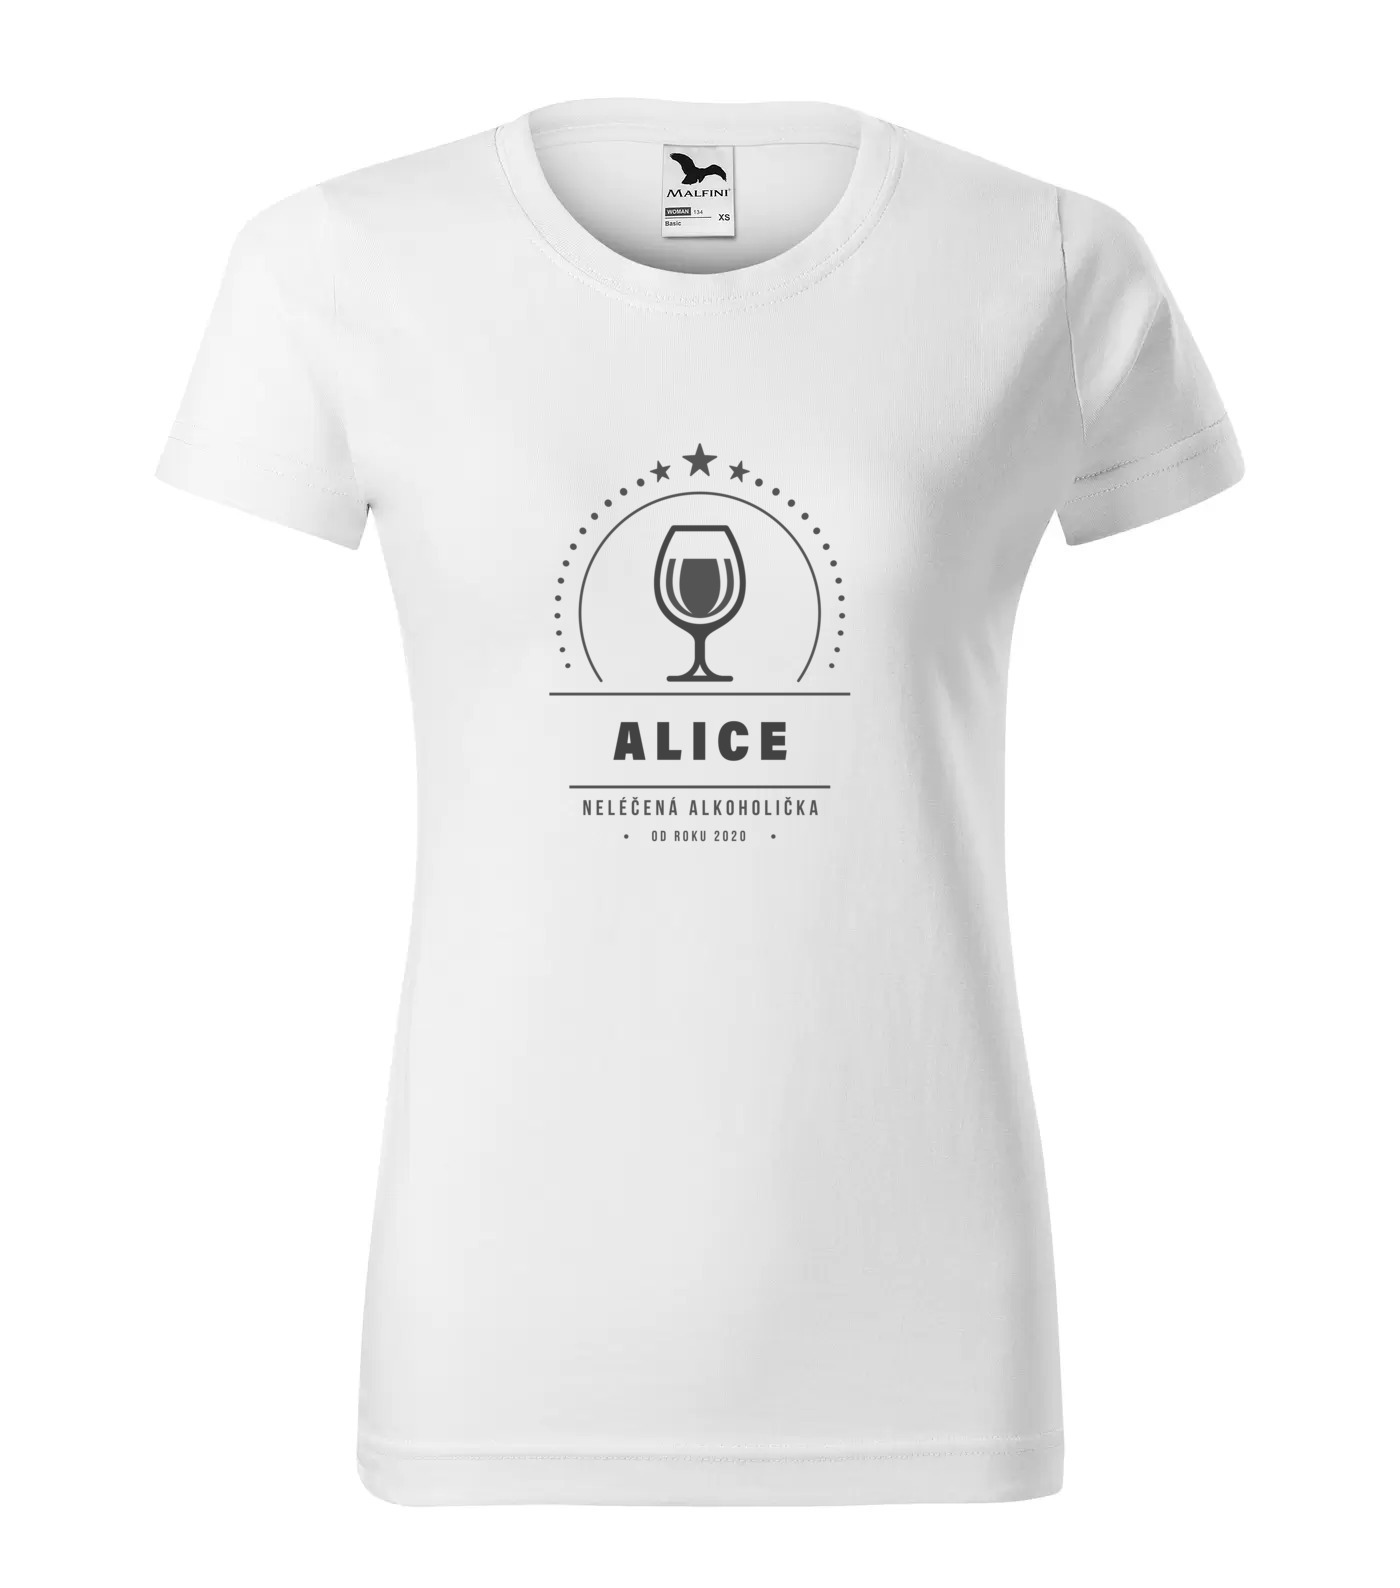 Tričko Alkoholička Alice